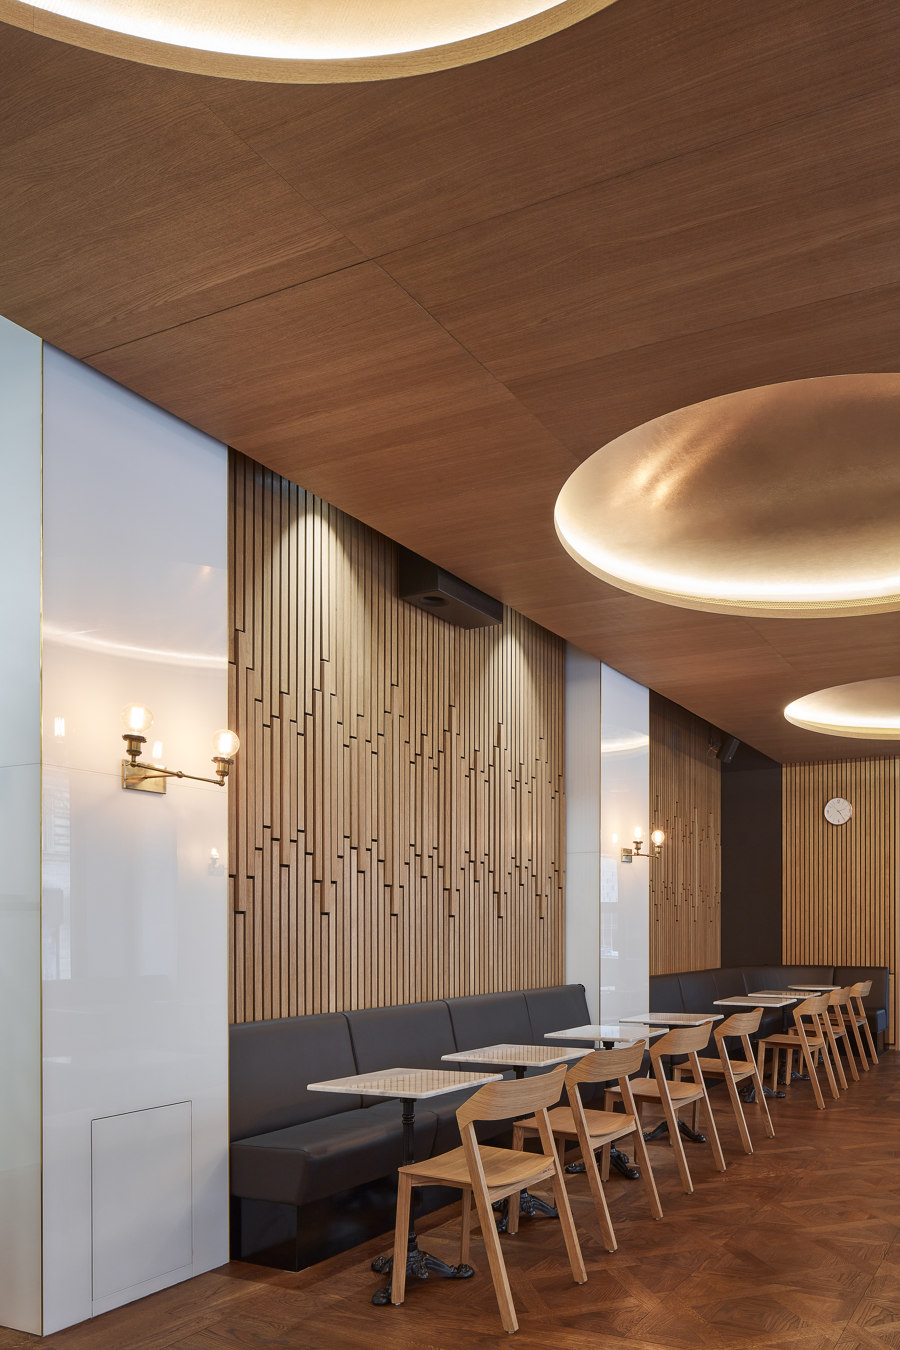 Radiocafé Vinohradská 12 by CMC Architects | Café interiors